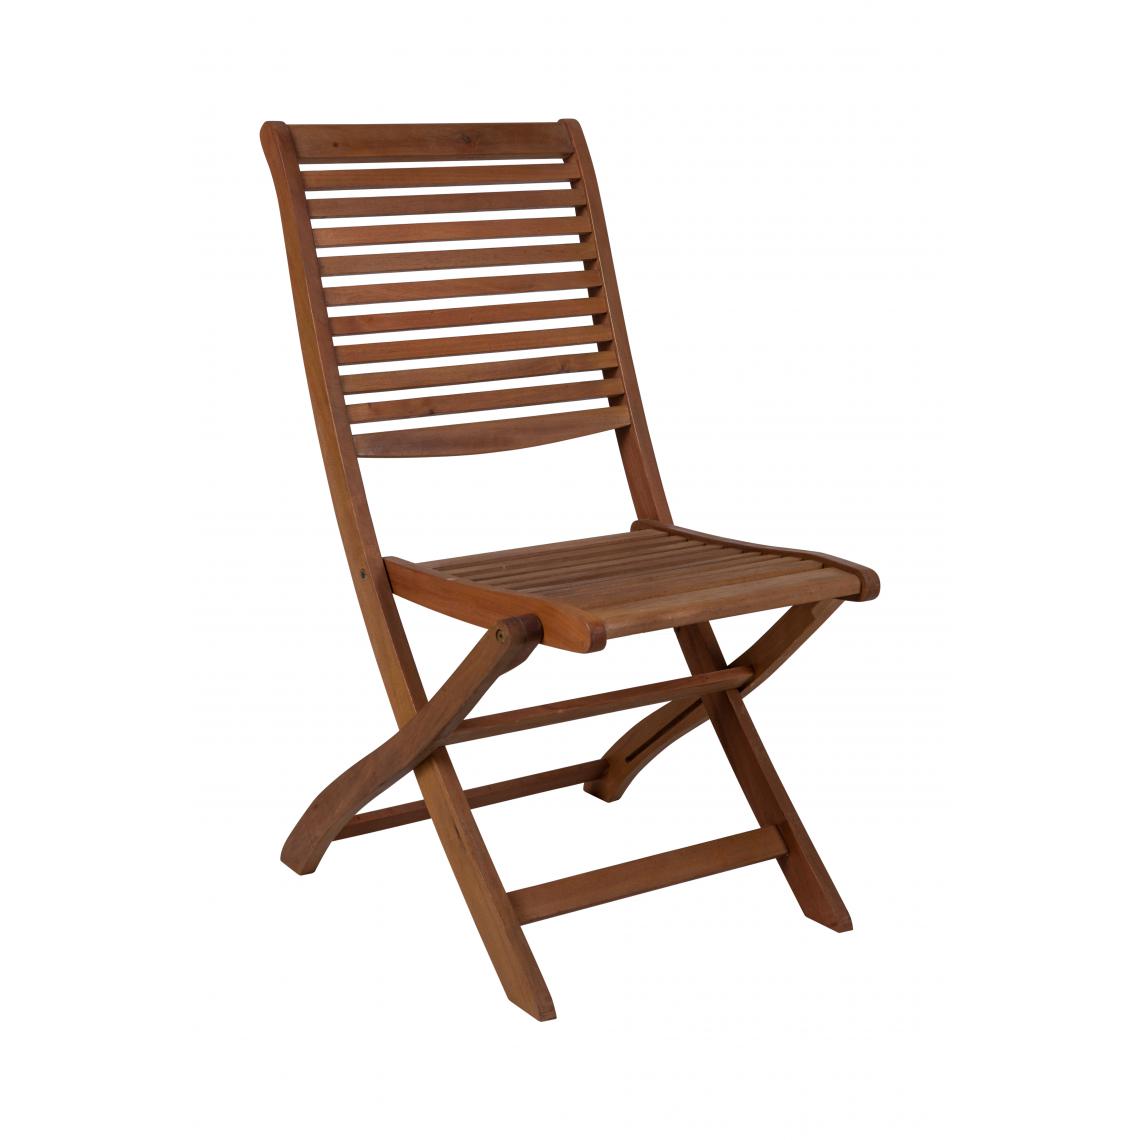 Alter - Chaise pliante en bois, coloris marron, 49 x 64 x 94 cm - Chaises